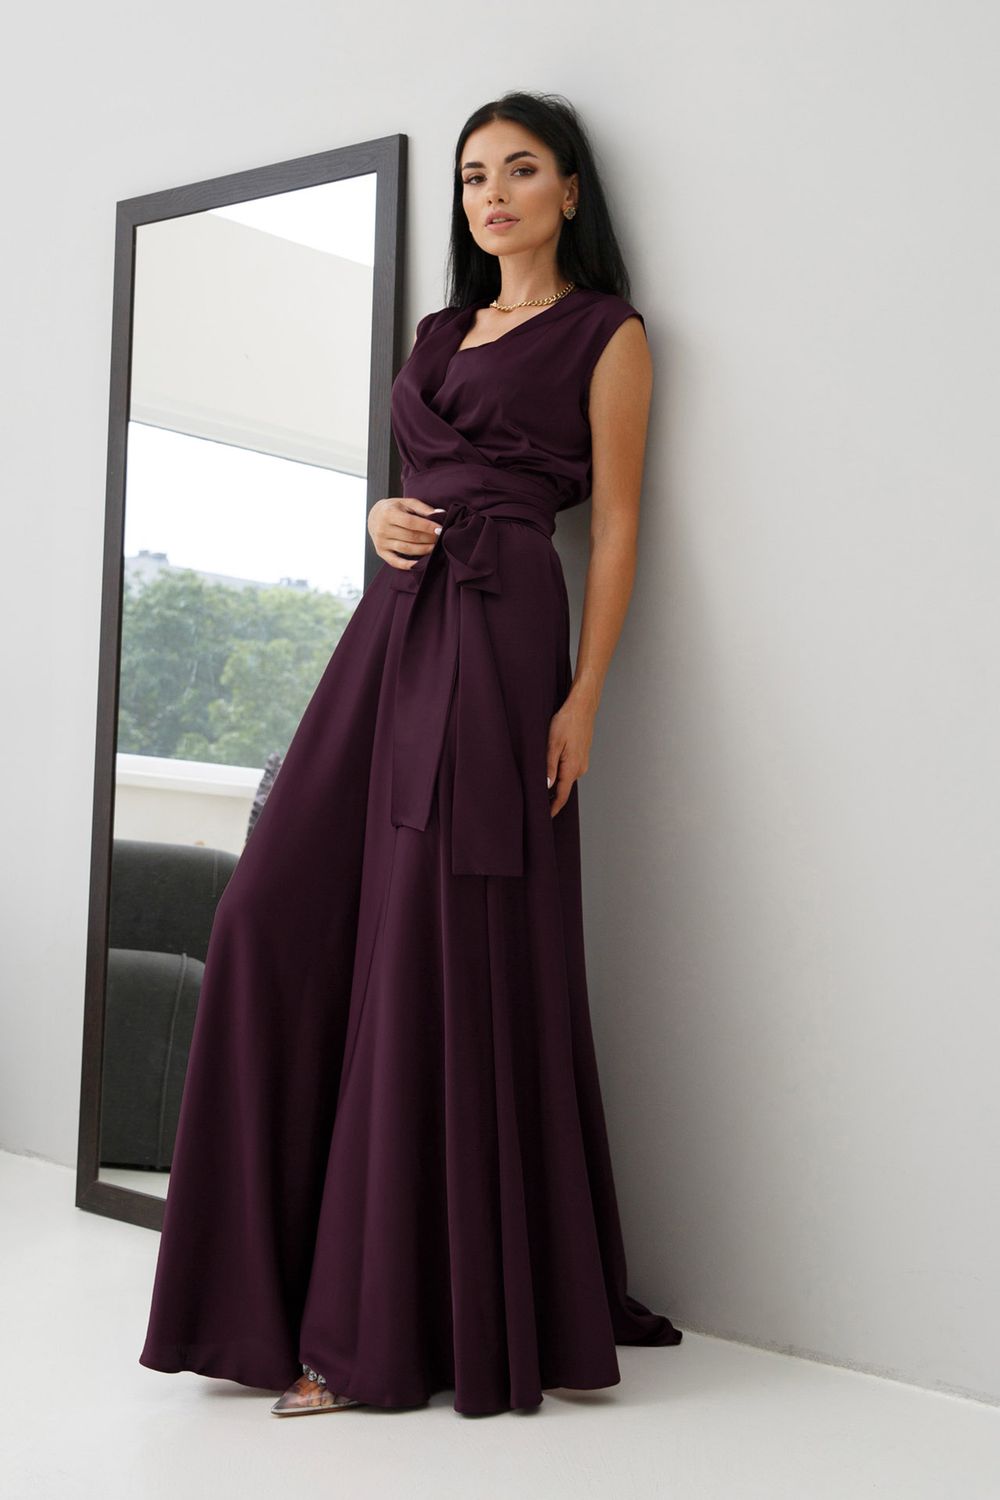 Вишукана вечірня сукня з шовку фіолетового кольору - фото